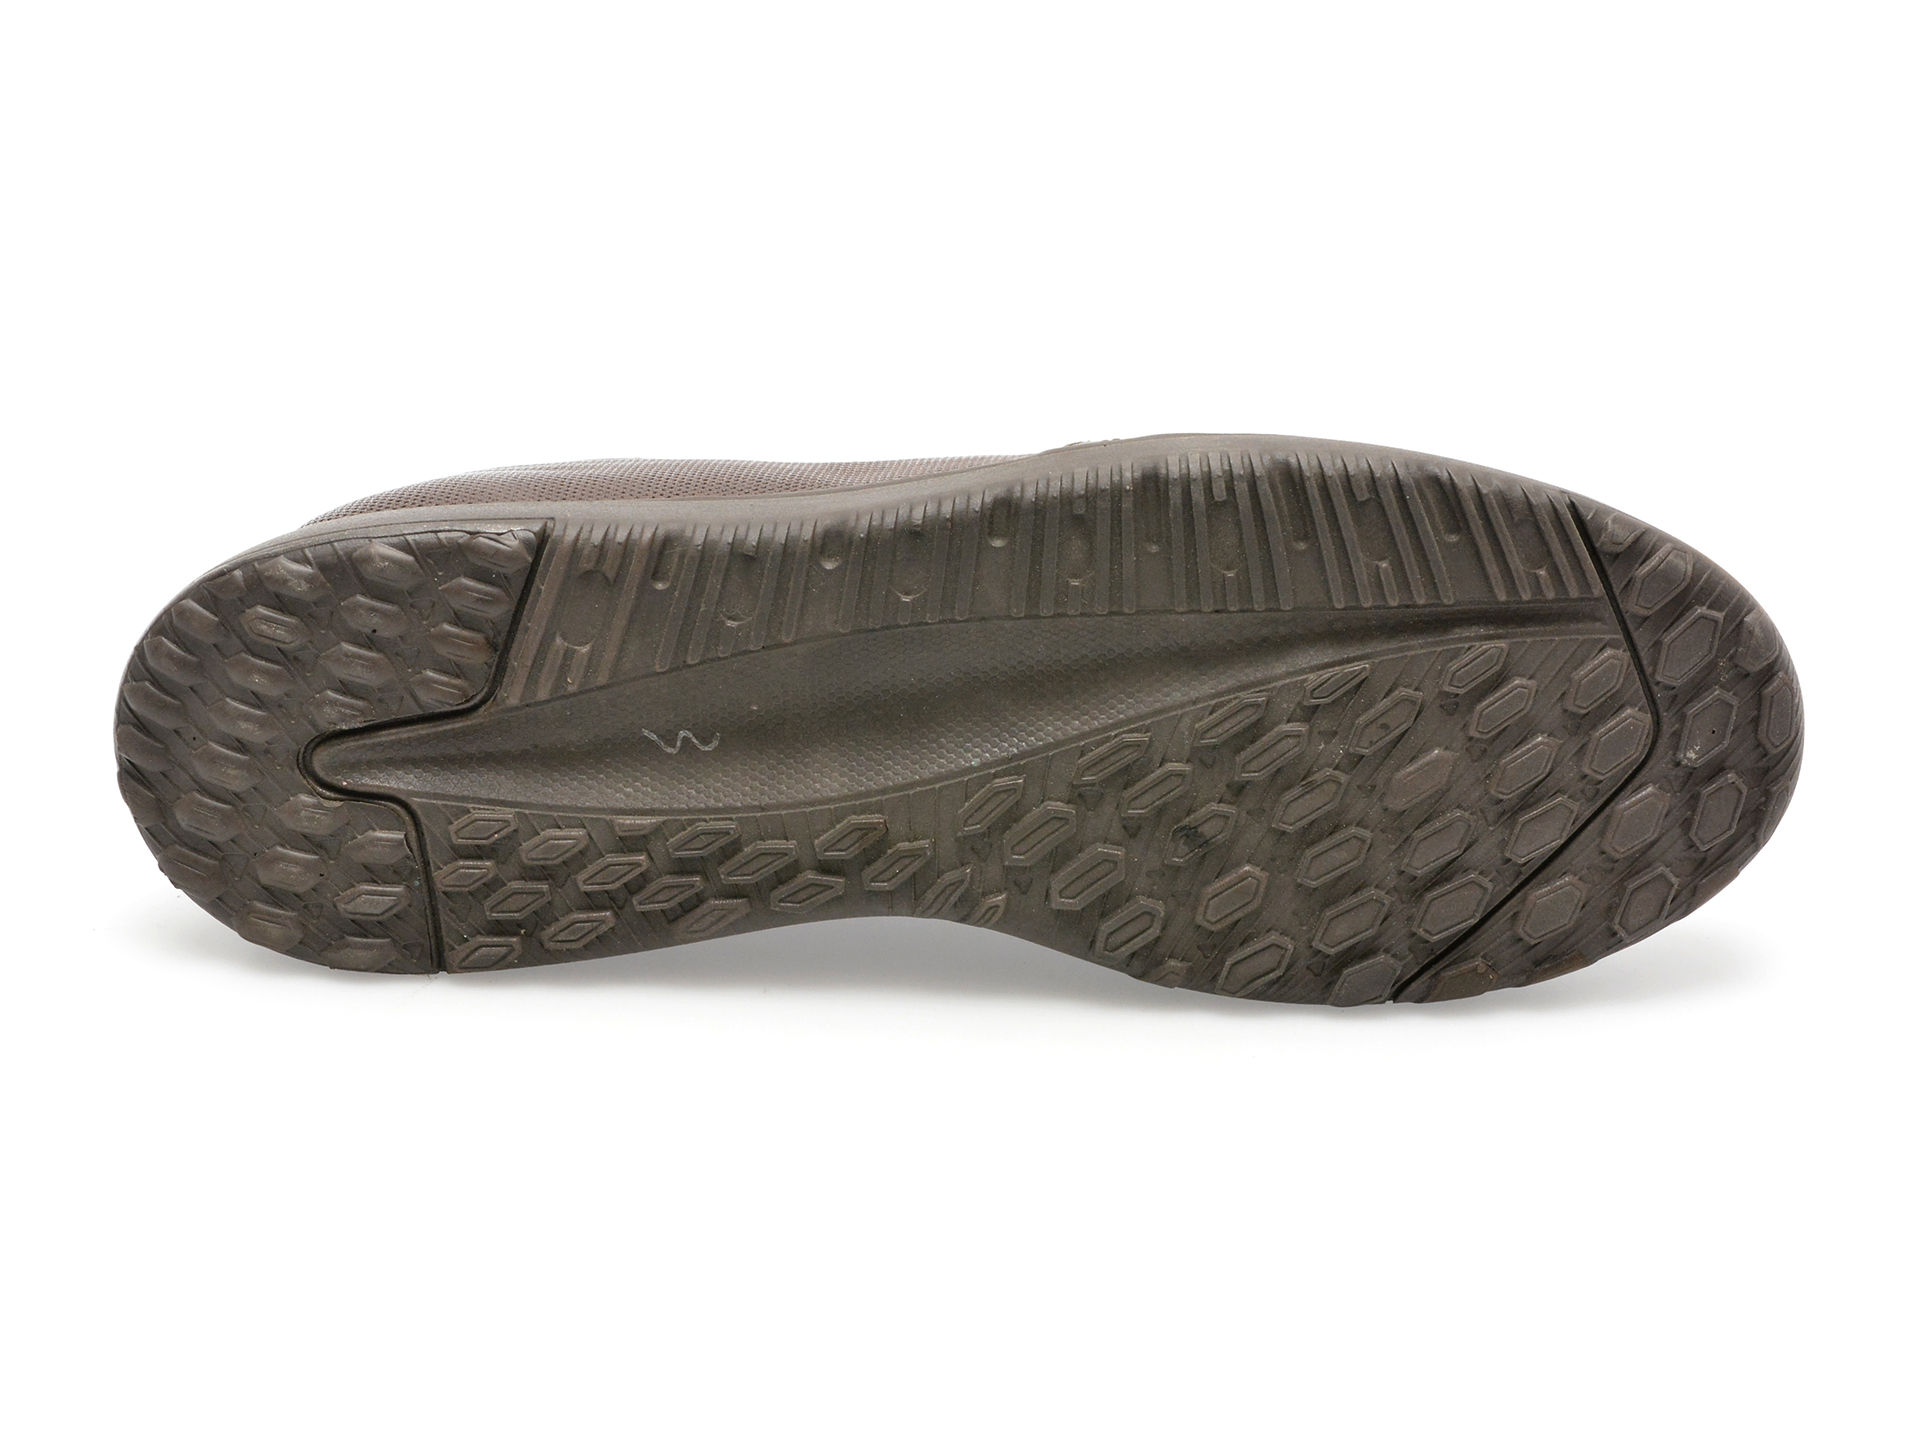 Pantofi OTTER maro, TUR85, din piele naturala